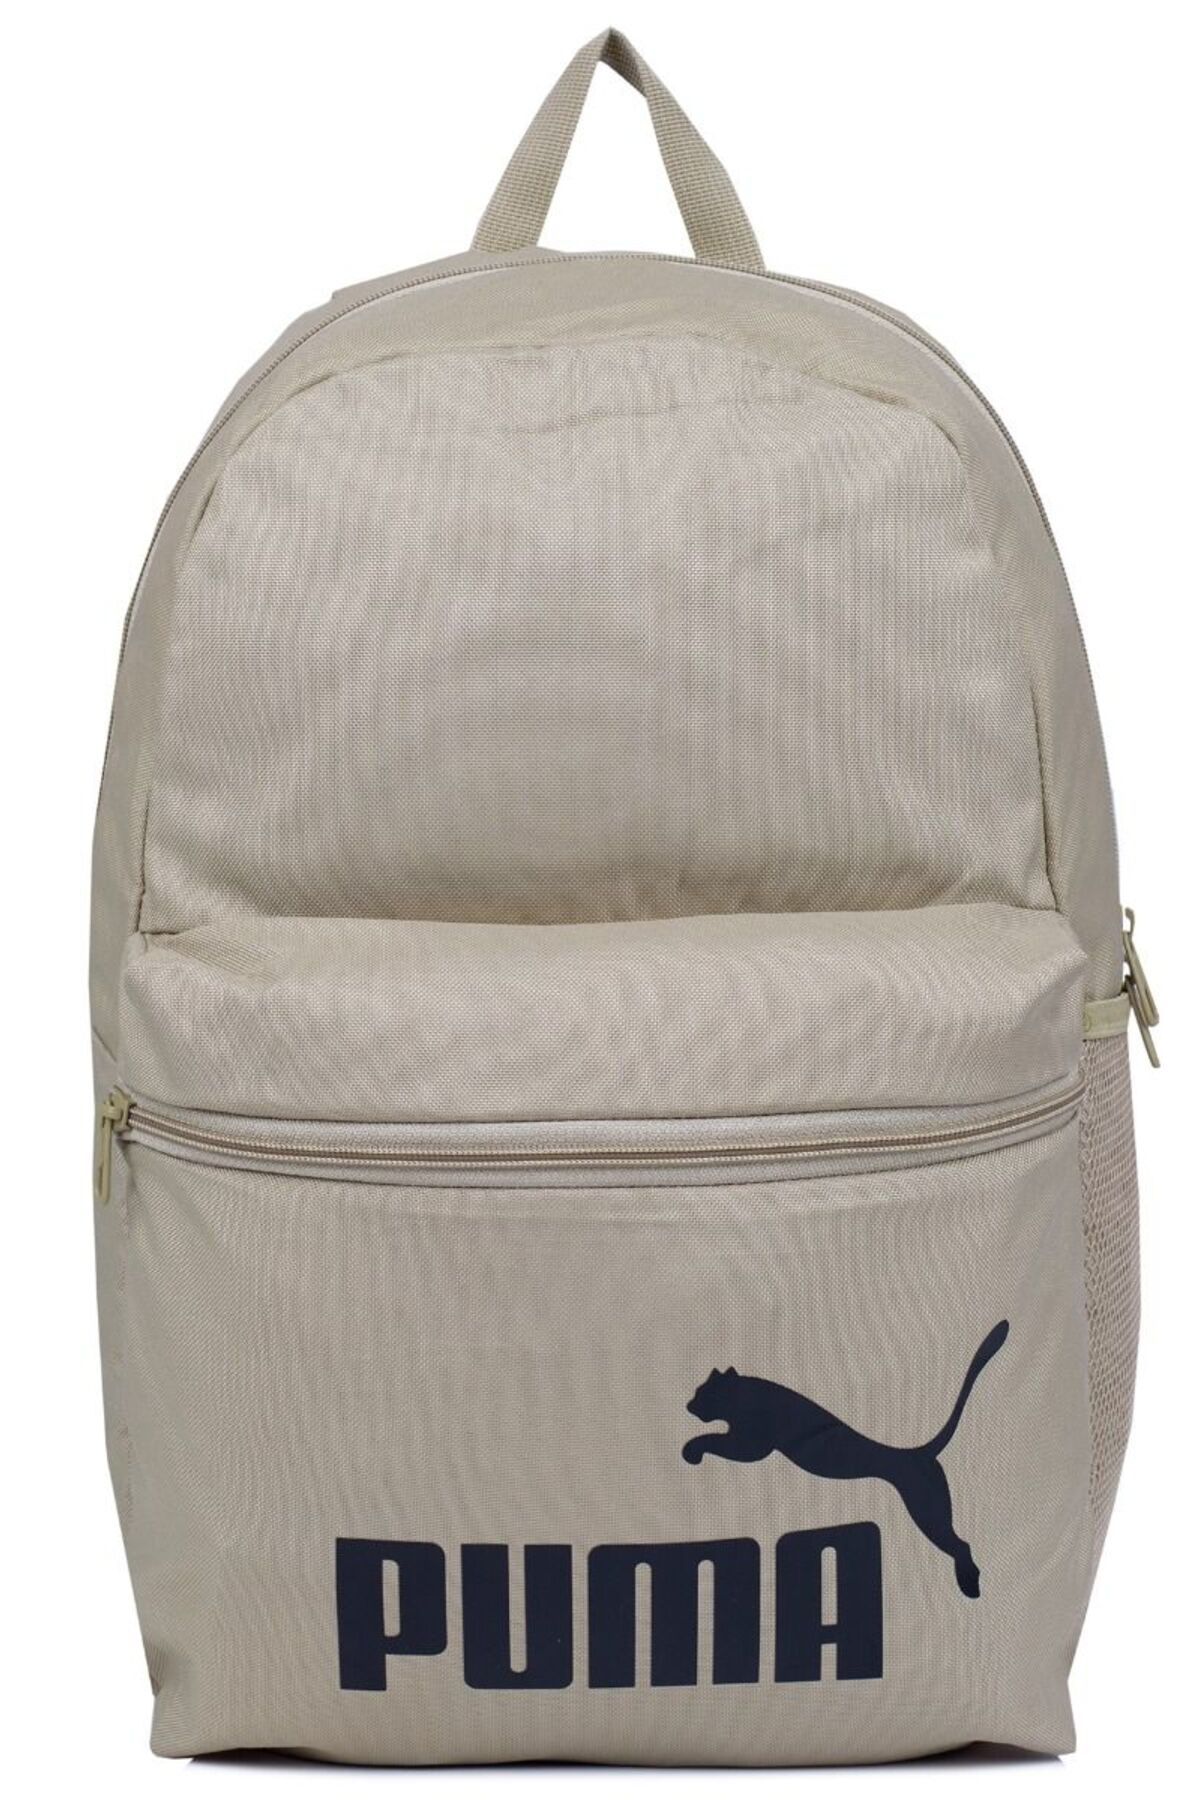 Puma Phase Backpack07994316